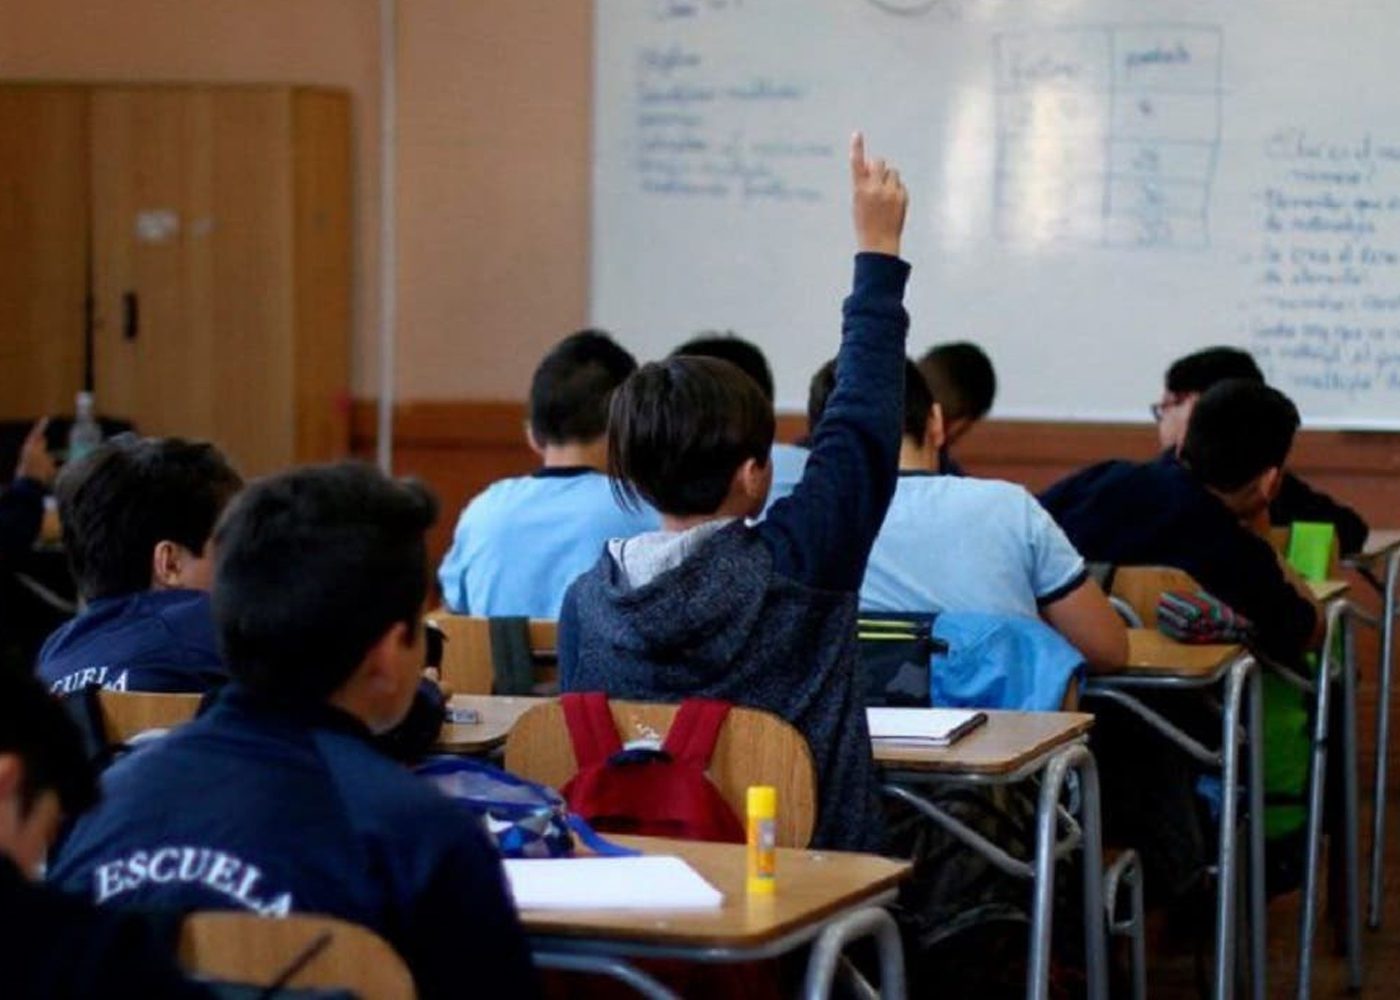 Segregación residencial y oportunidades educacionales en el sistema de admisión escolar en Chile